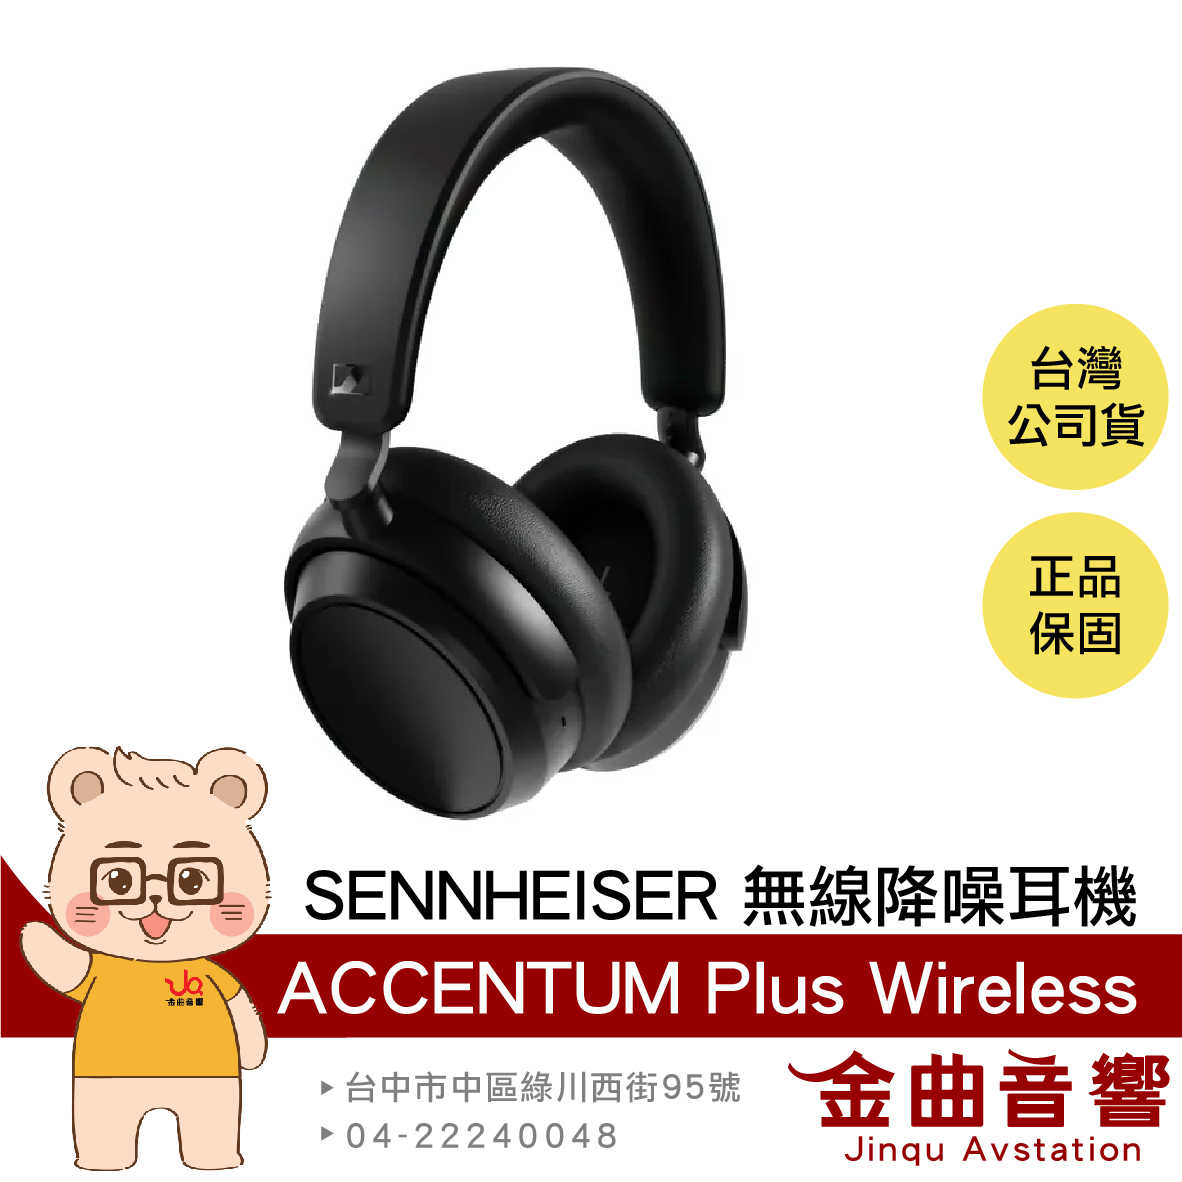 SENNHEISER 森海塞爾 Accentum Plus Wireless 降噪 無線 耳罩式耳機 | 金曲音響